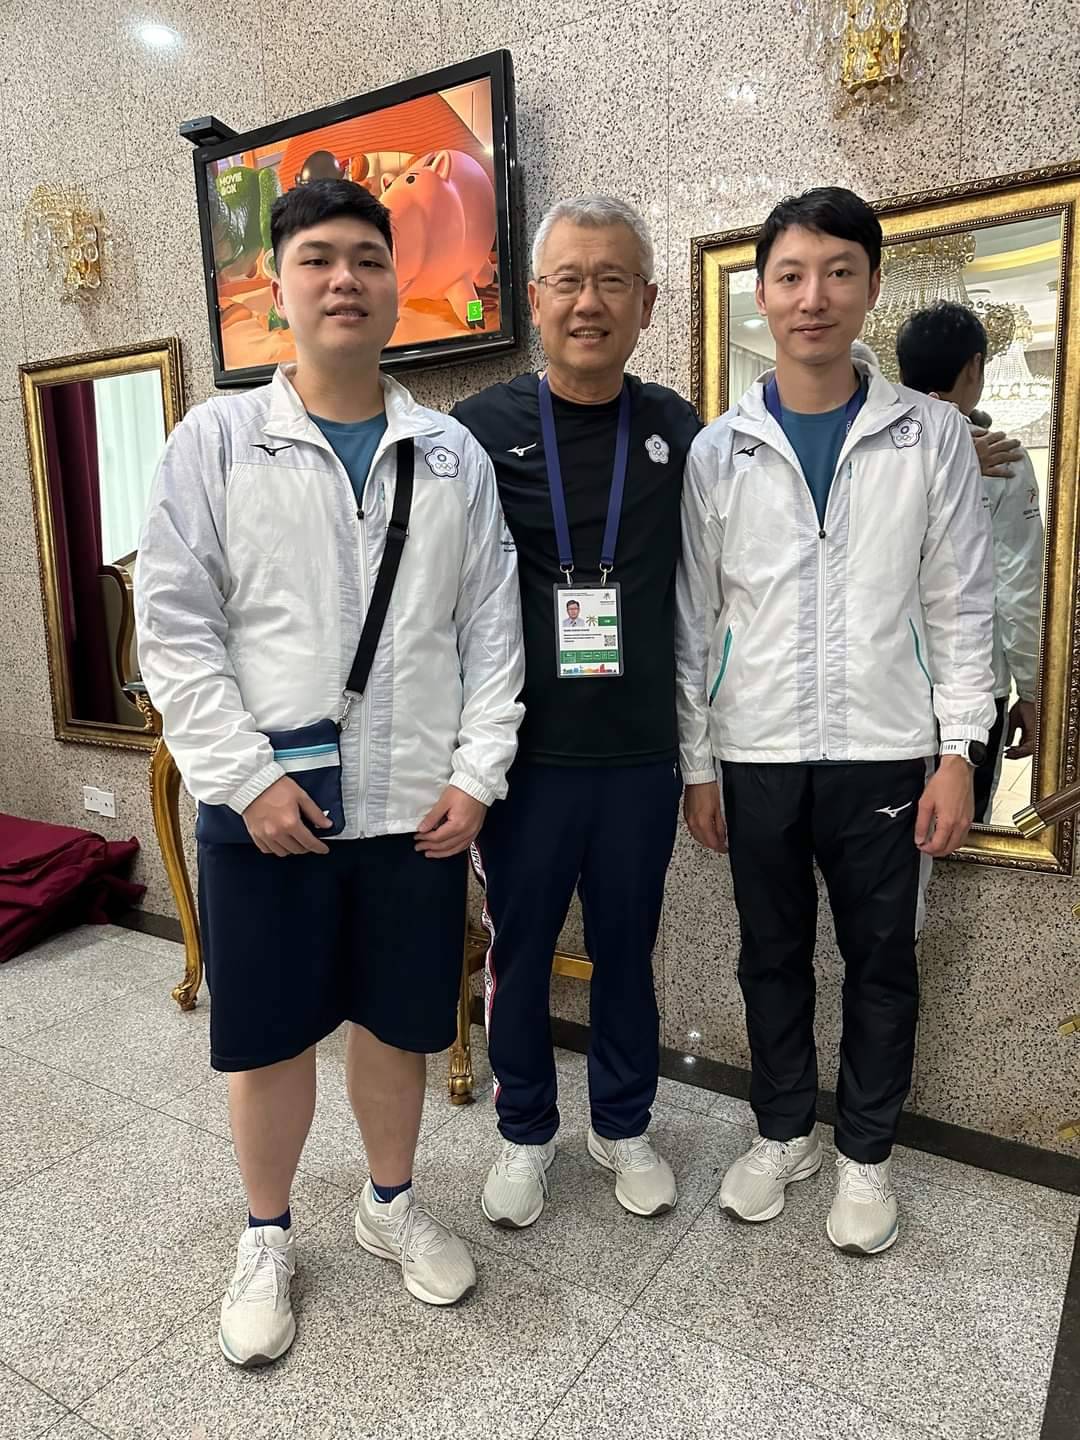 全力支持國際運動賽事  蒙古烏蘭巴托東亞青年運動會